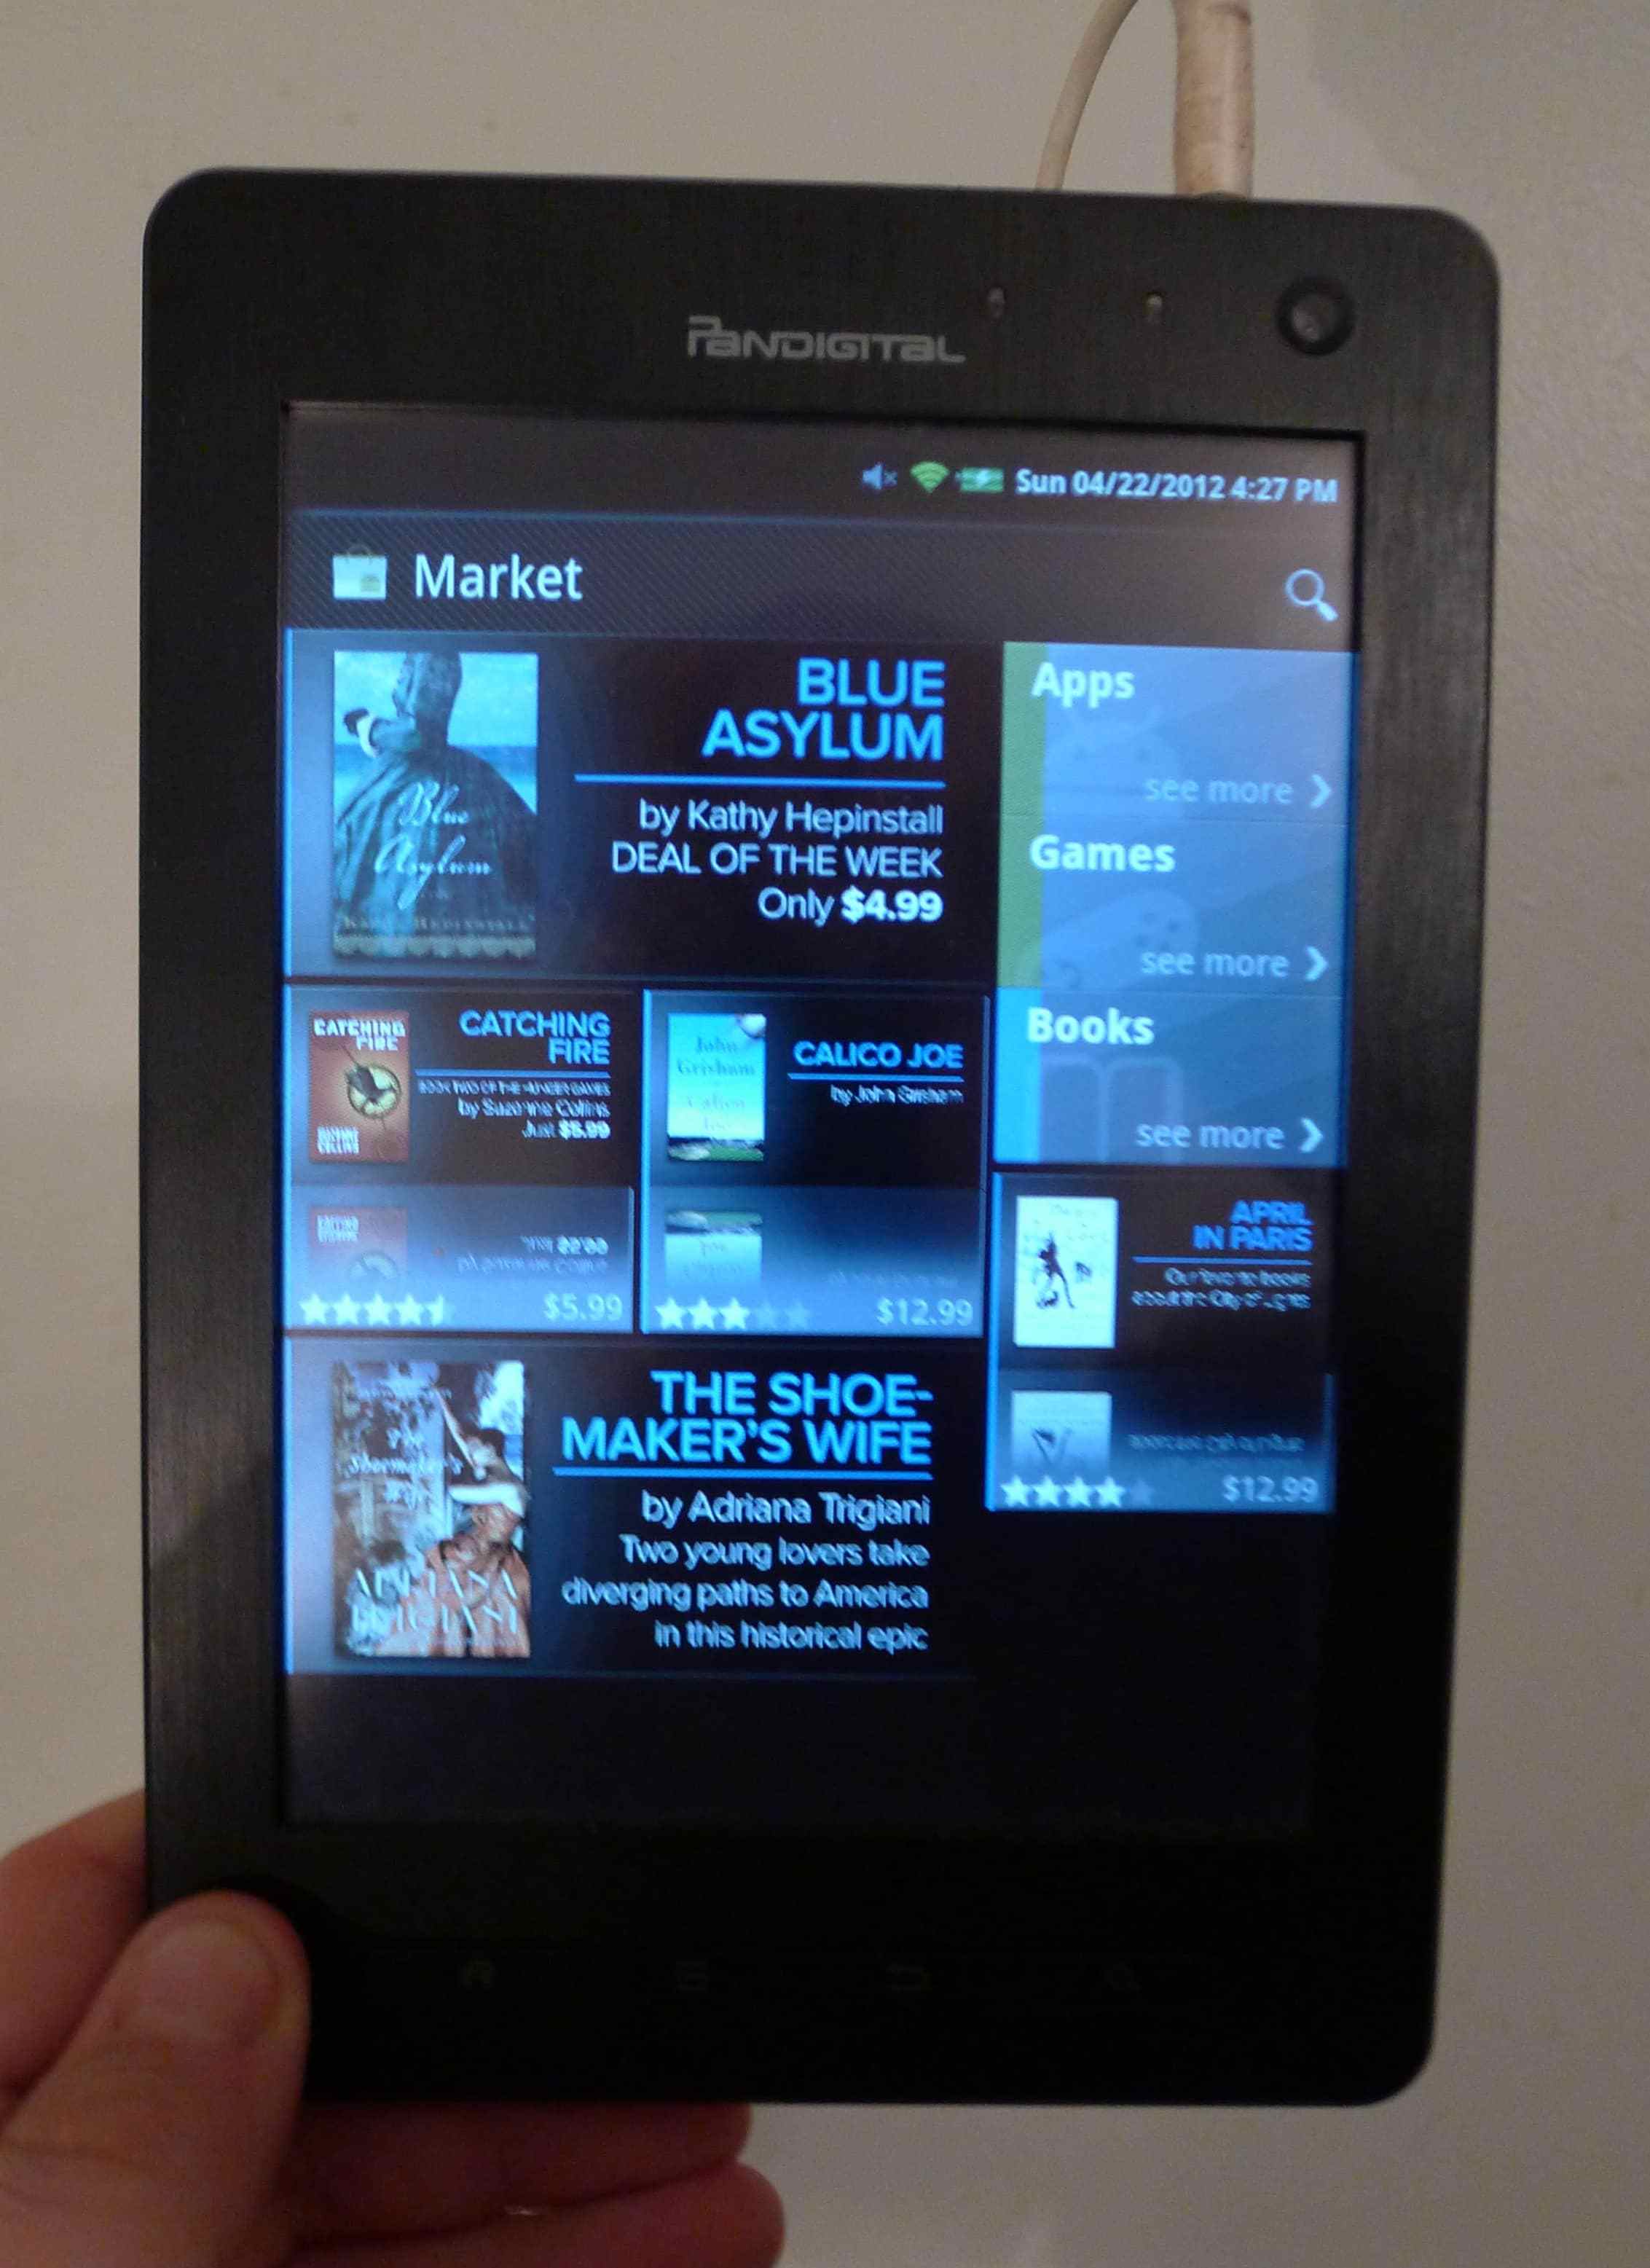 Google play store app for pandigital tablet update update